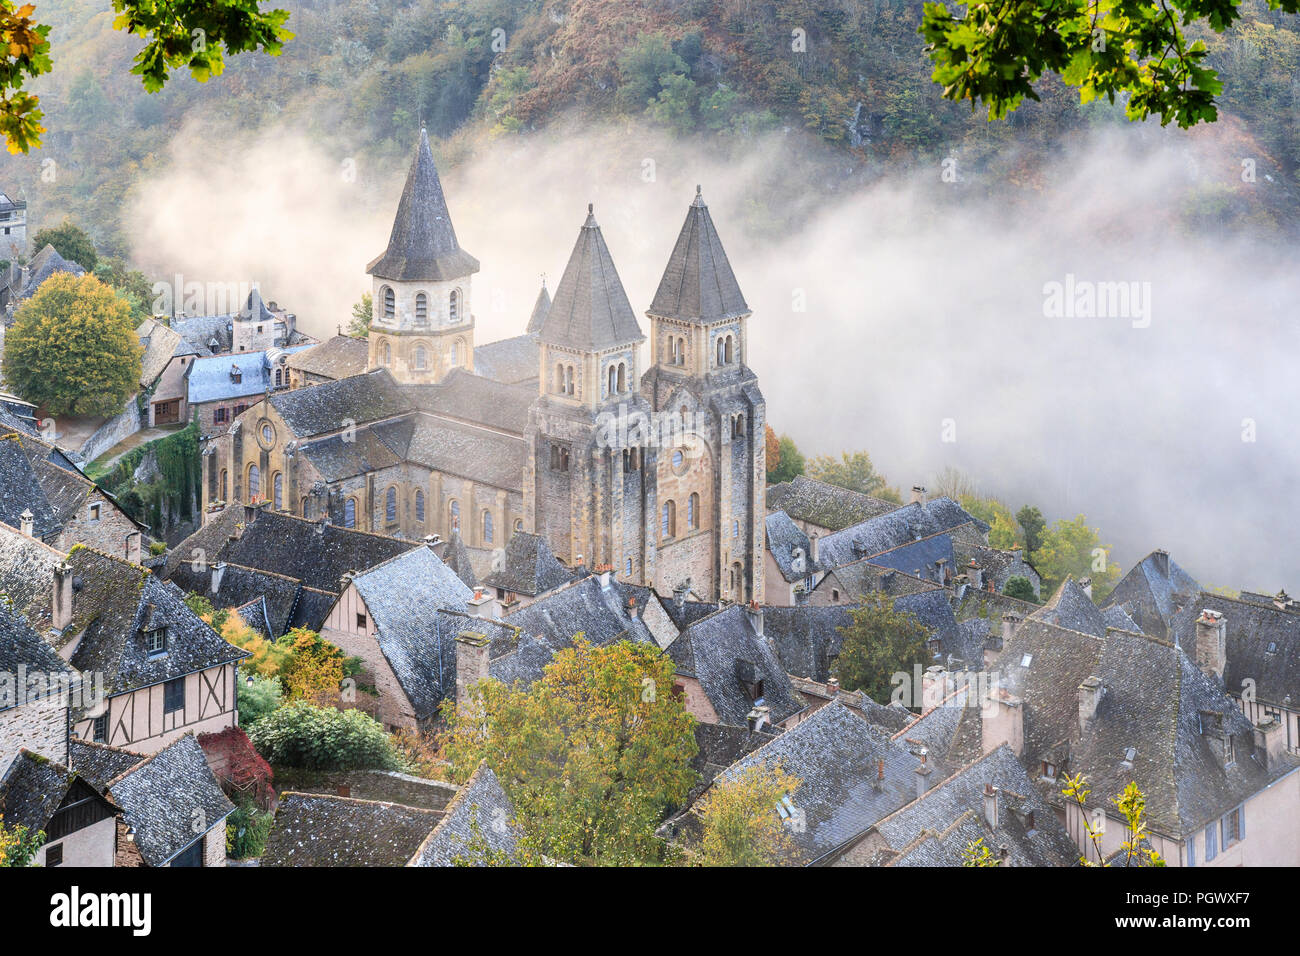 Francia, Aveyron, Conques, etiquetados Les Plus Beaux aldeas de France (Los pueblos más bellos de Francia), parada en el Camino de Santiago, una aldea Foto de stock